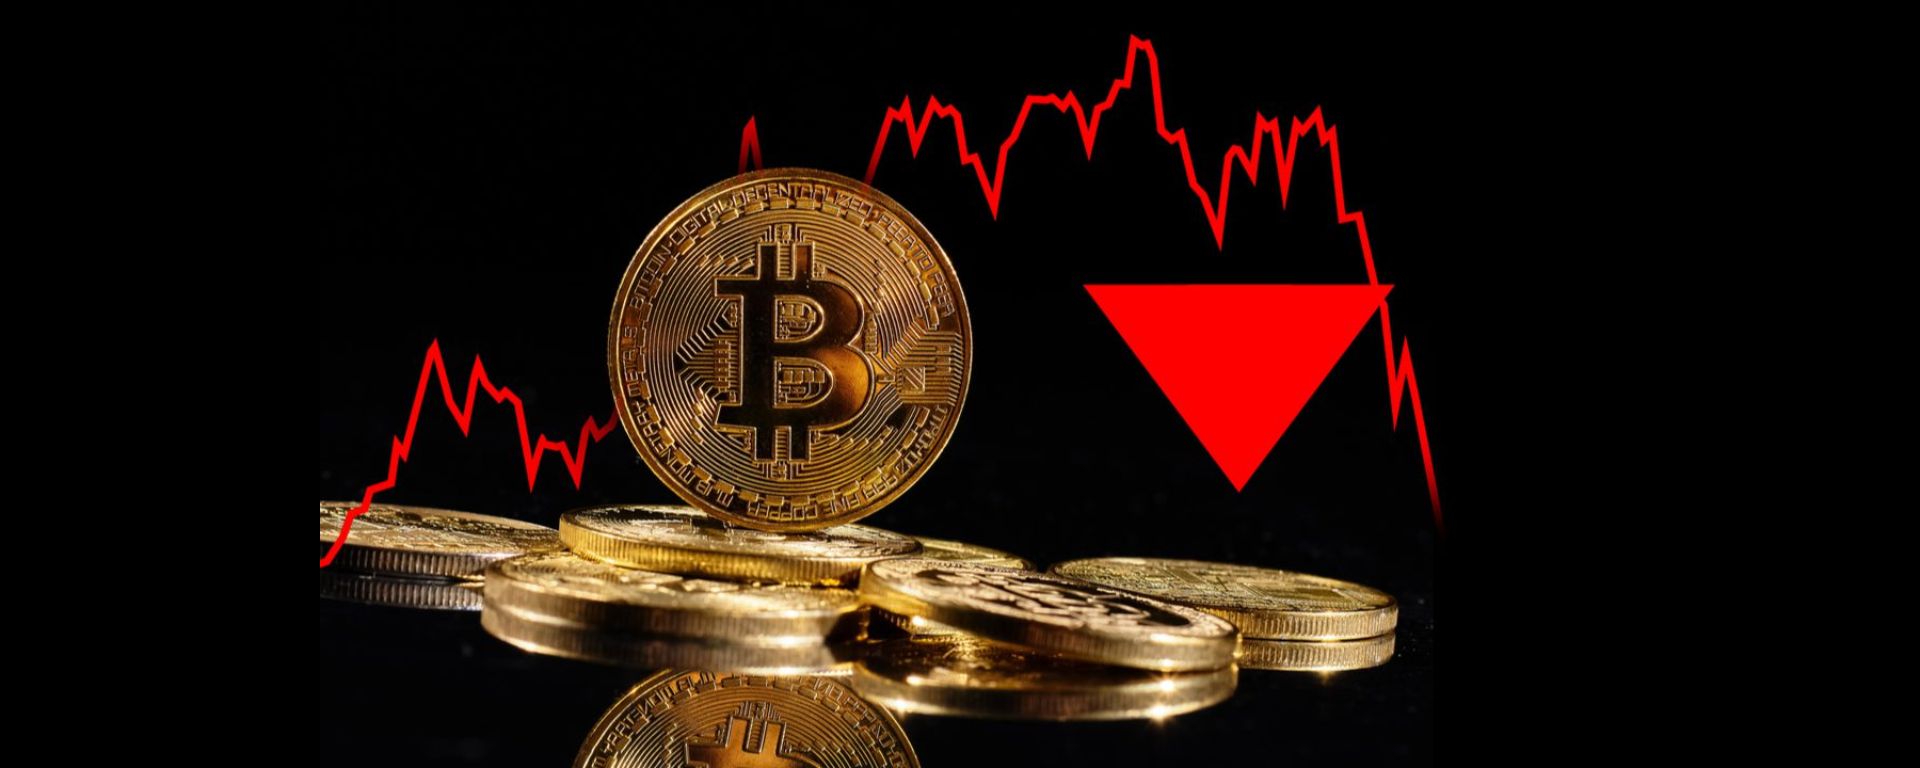 Bitcoin falha em se manter em US$ 23.000 e derruba altcoins